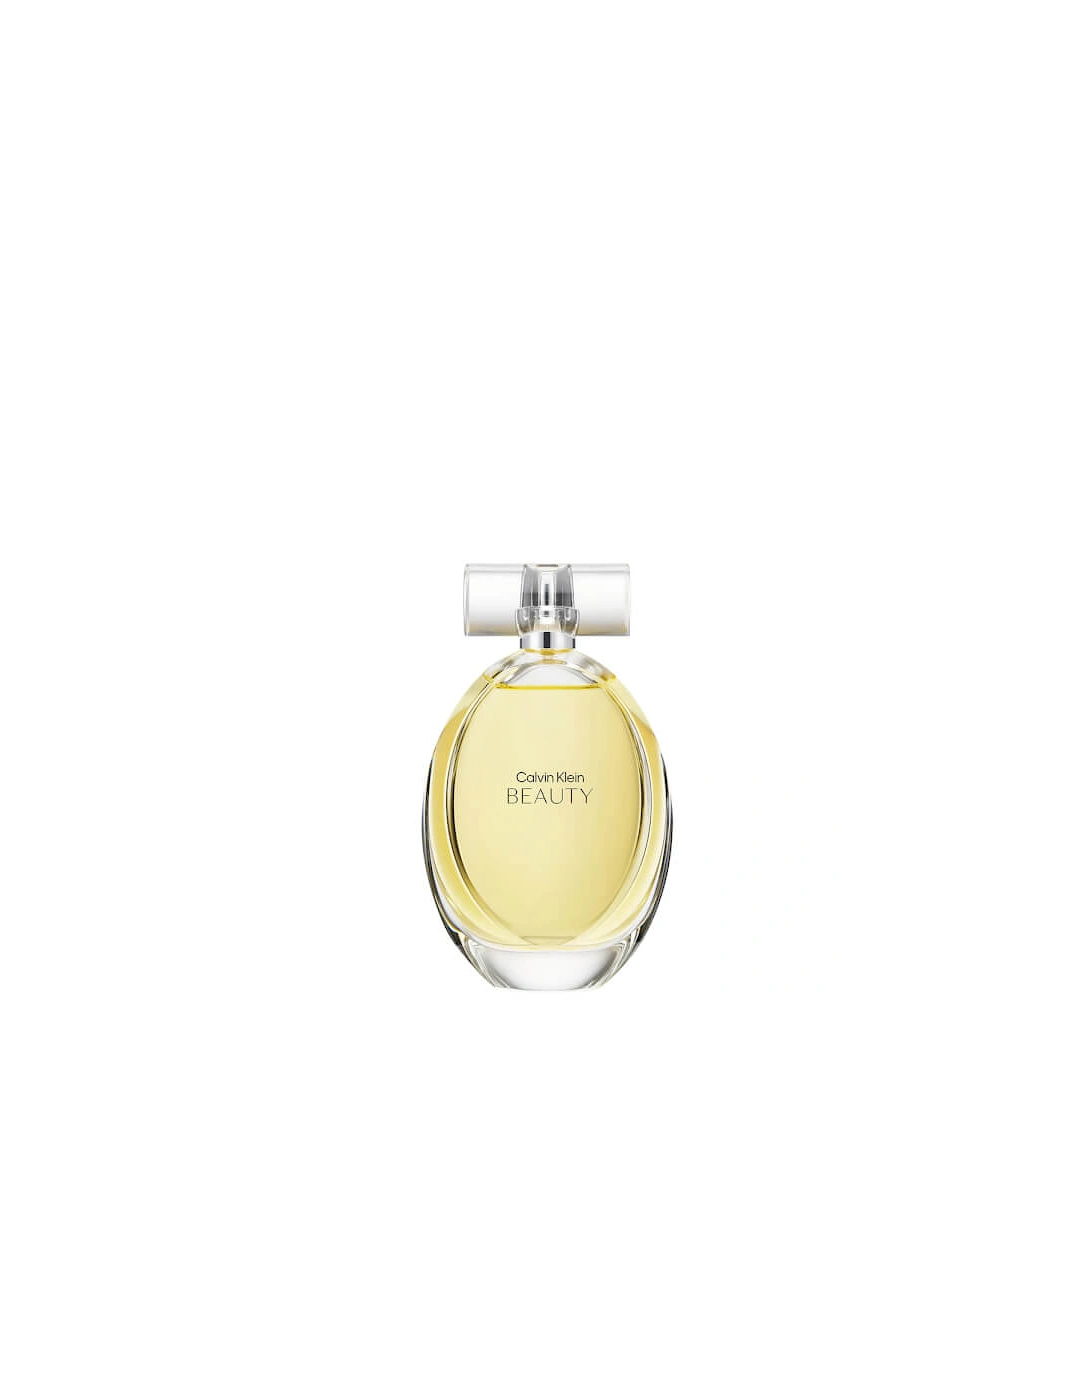 Beauty Eau de Parfum 50ml, 2 of 1